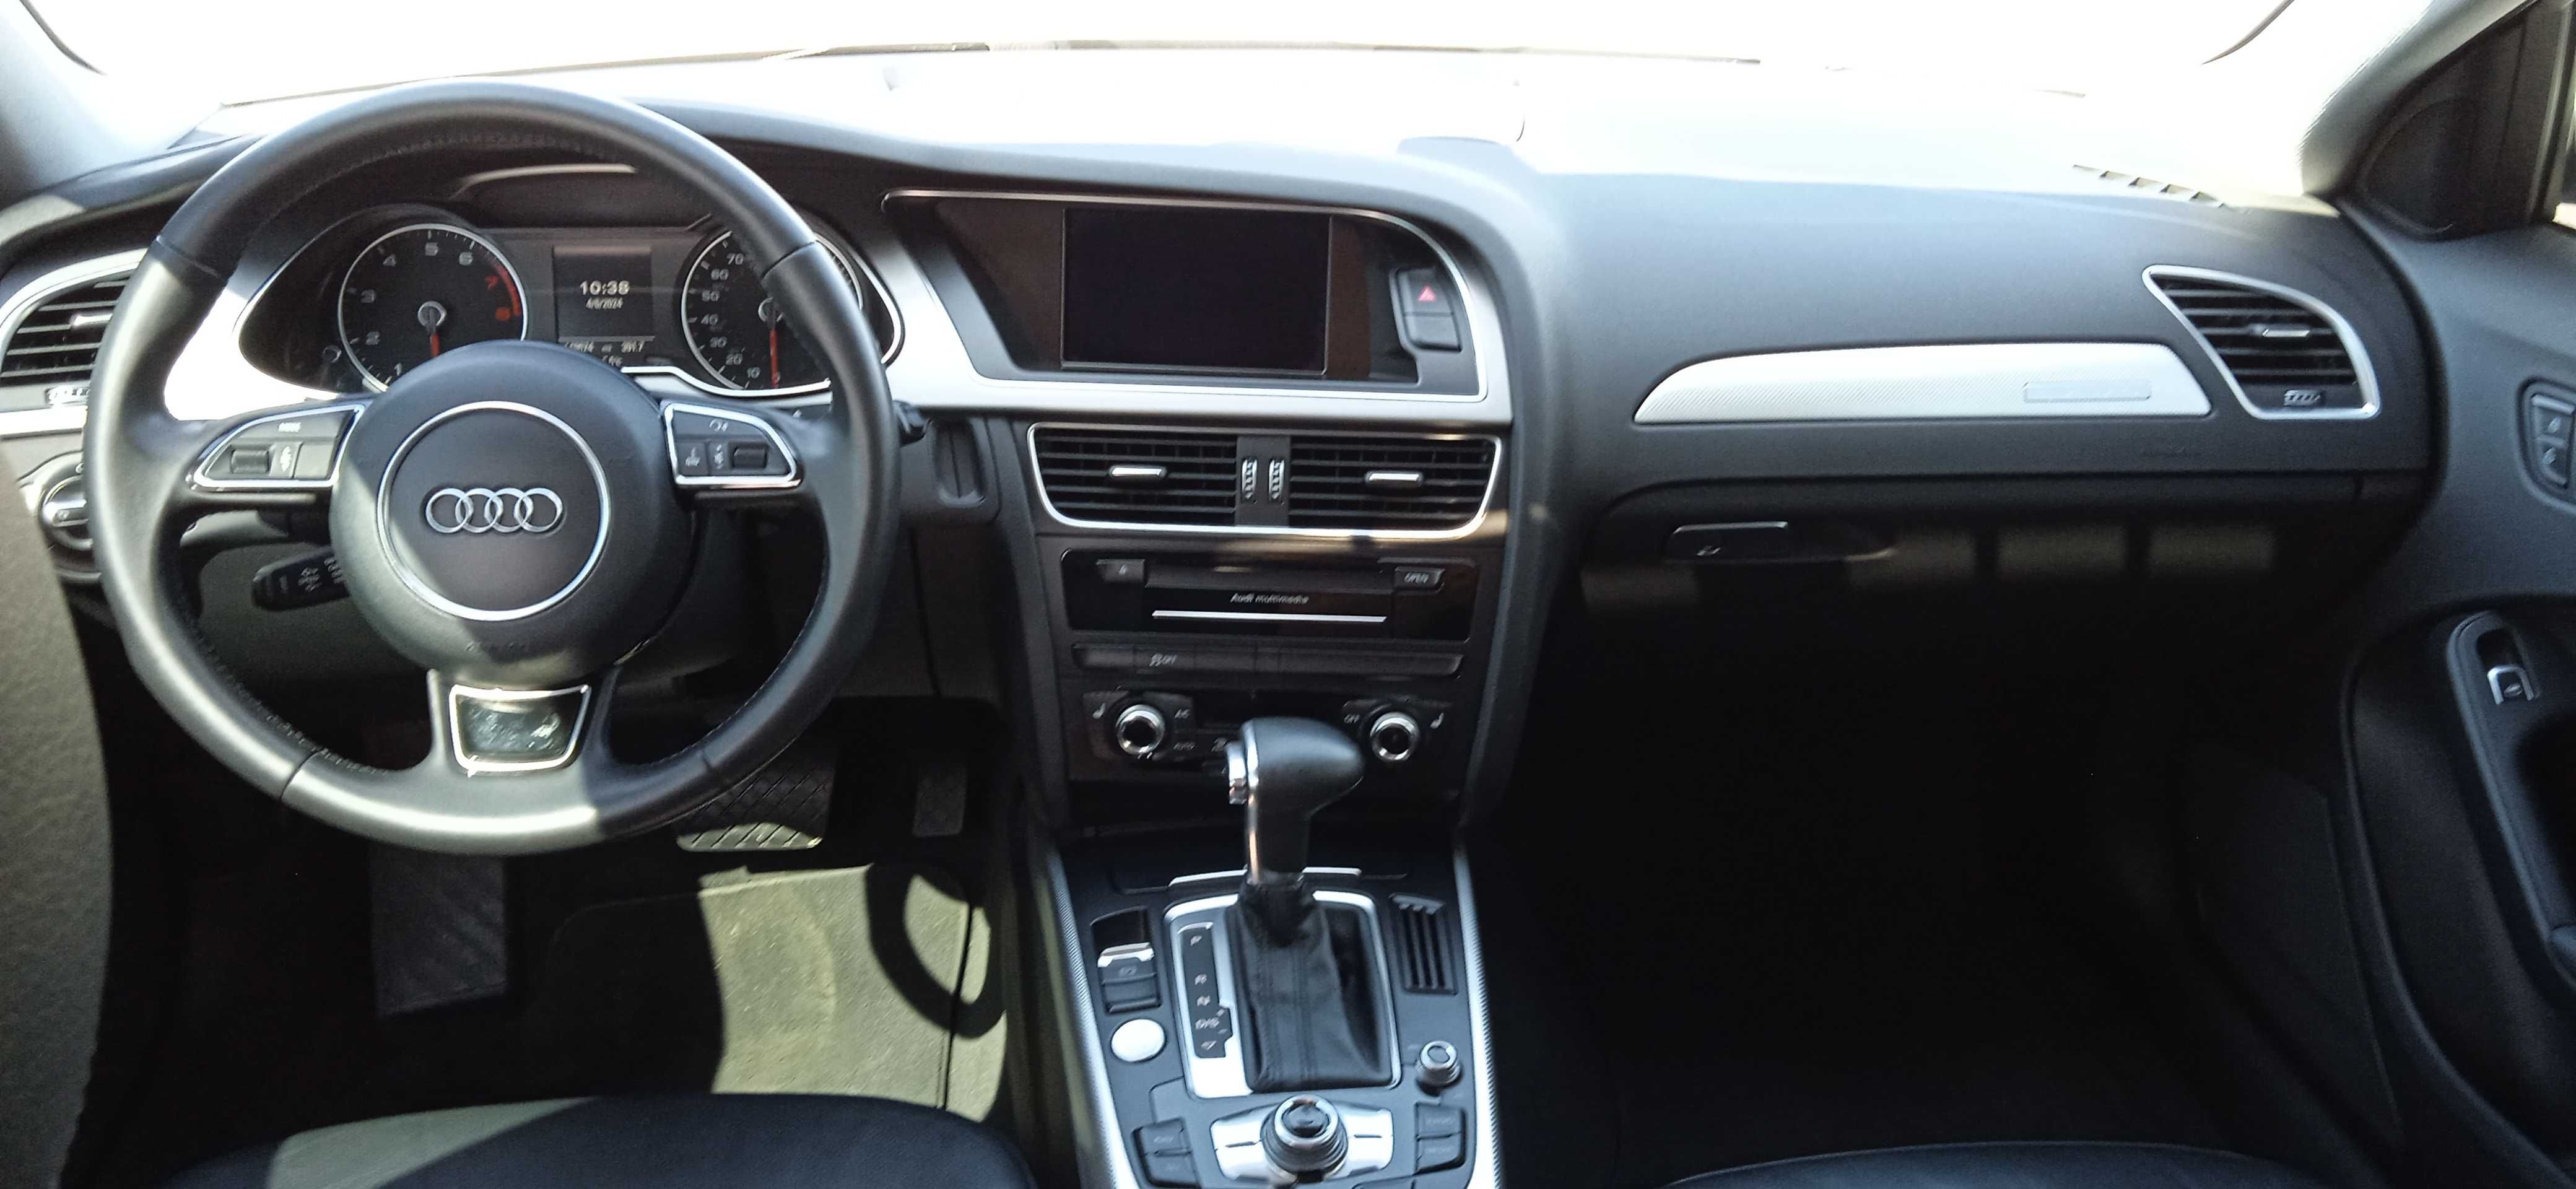 Audi A4 Premium Plus 2015 Quattro S-Line